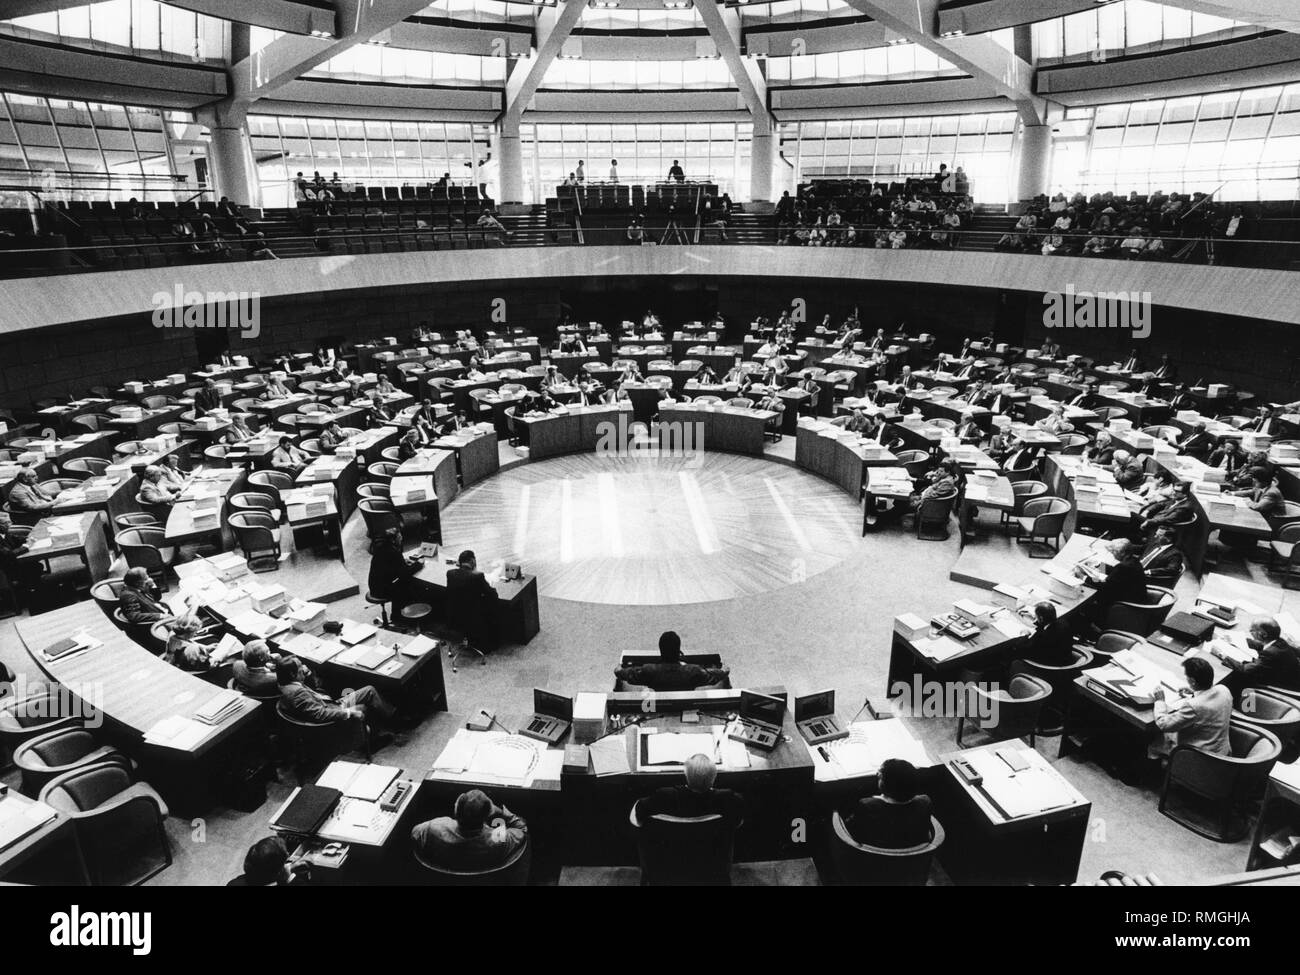 Innenansicht der ersten Sitzung des Landtages von Nordrhein-Westfalen in das neu errichtete Gebäude der Landtag 7.9.1988. Auf der viewwing Bänke gibt es Kamera Teams. Stockfoto